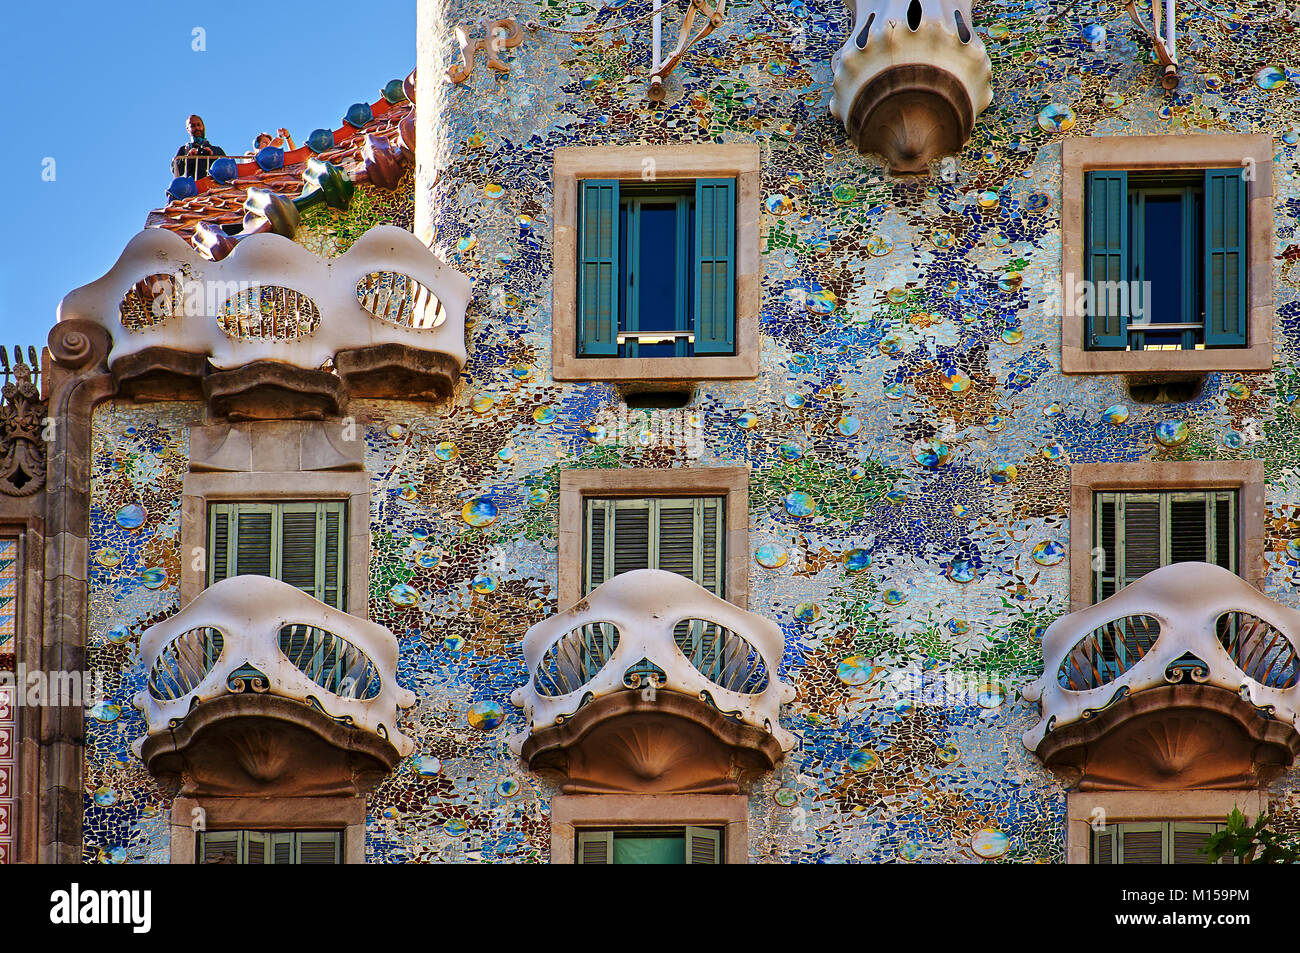 Barcelona, Spain - October 28, 2015: Casa Batllo facade details in Barcelona, Spain Stock Photo